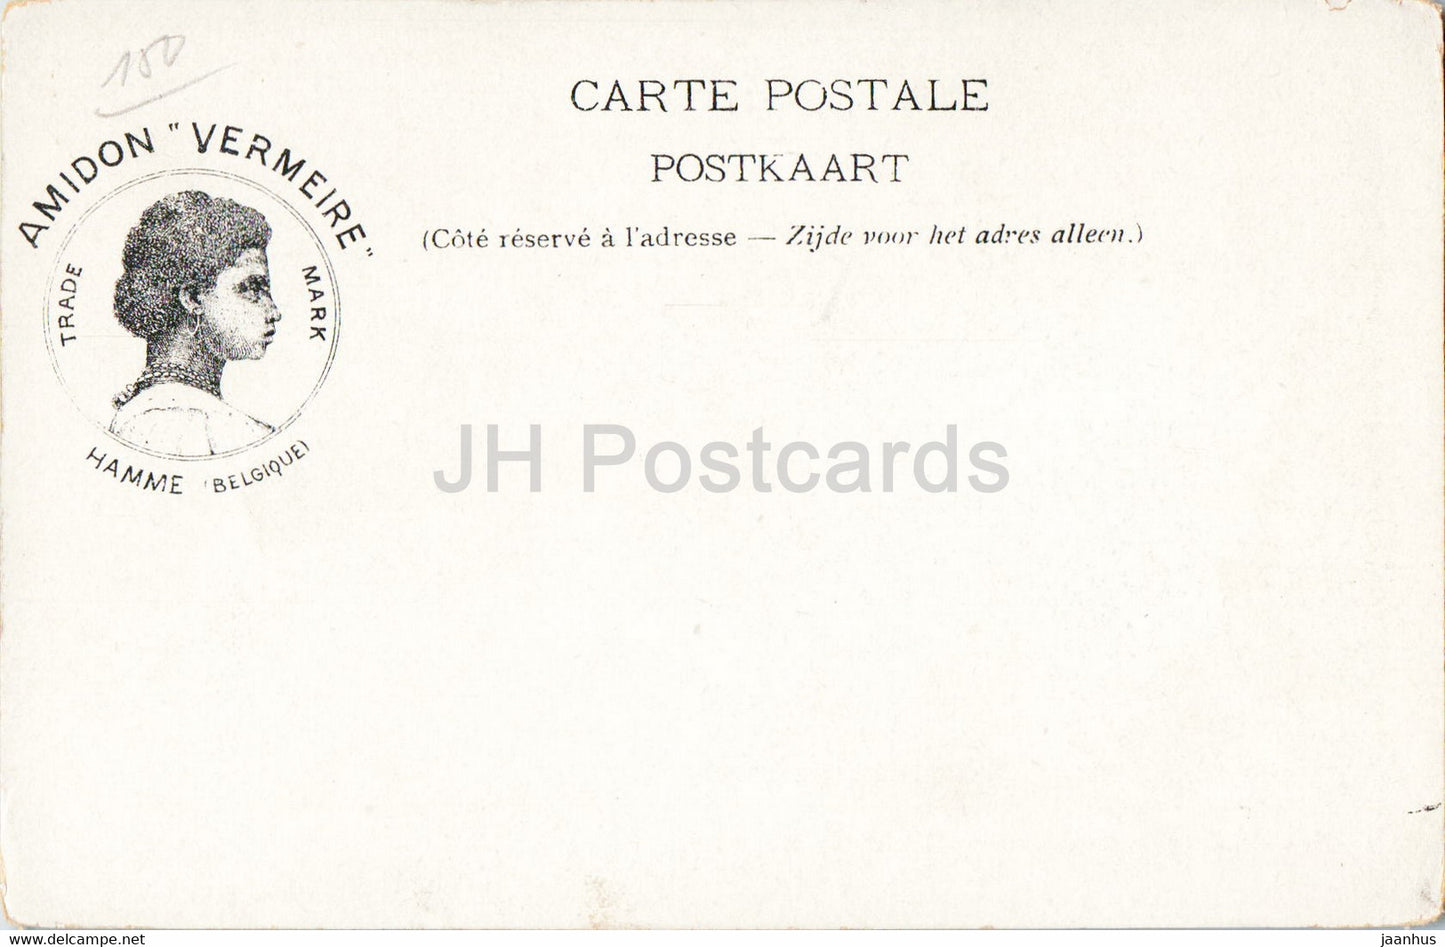 Cathédrale de Mayence - Mayence - Le Cloître - Amidon Vermeire - carte postale ancienne - Allemagne - inutilisée